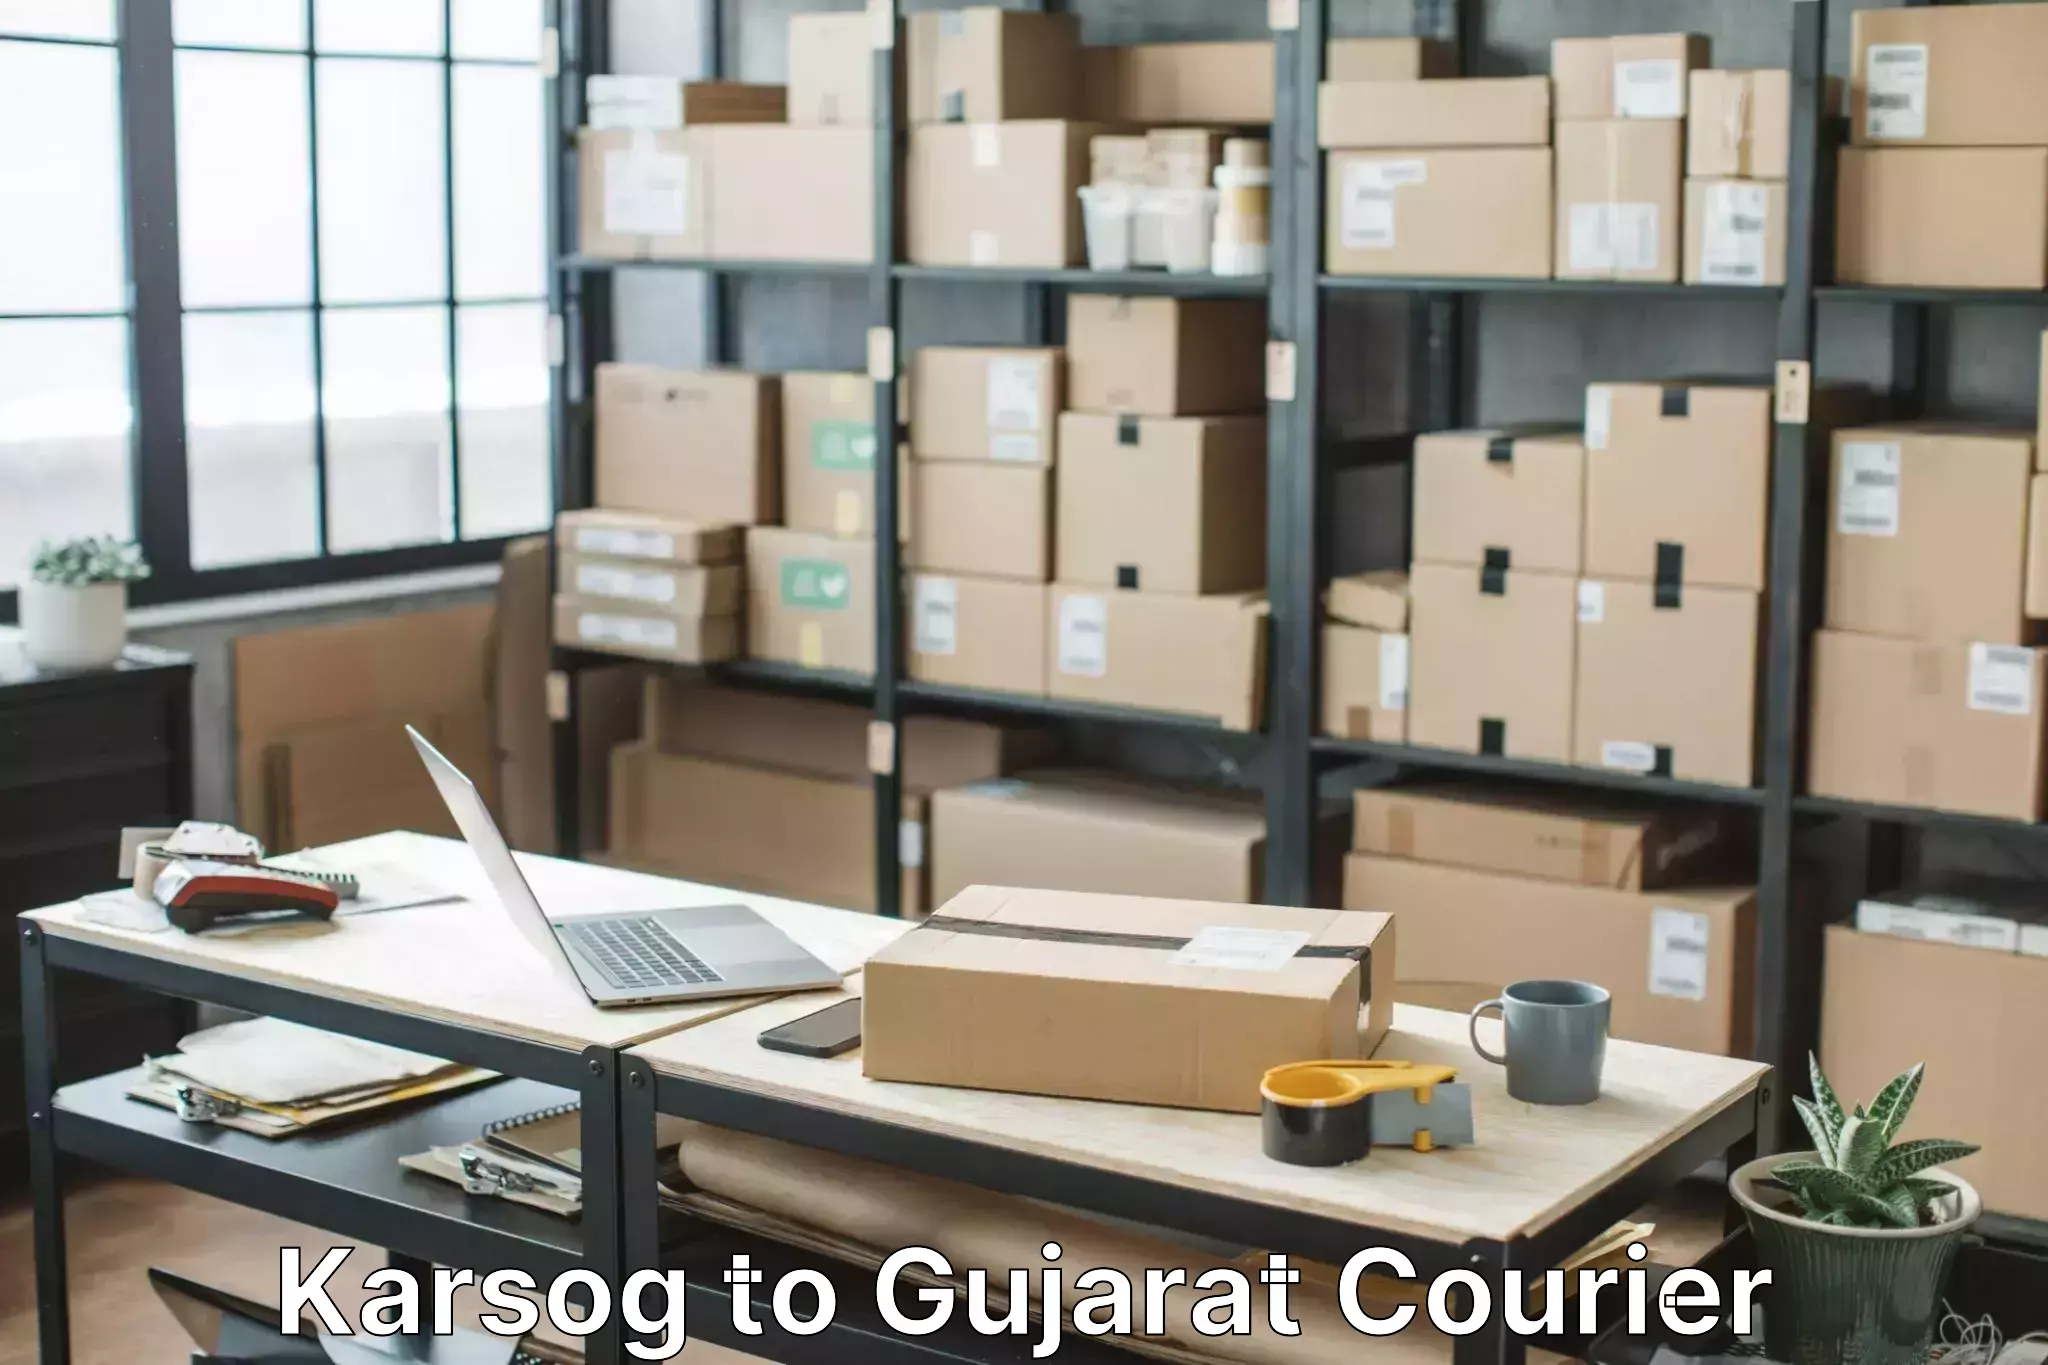 Furniture transport experts Karsog to Gujarat